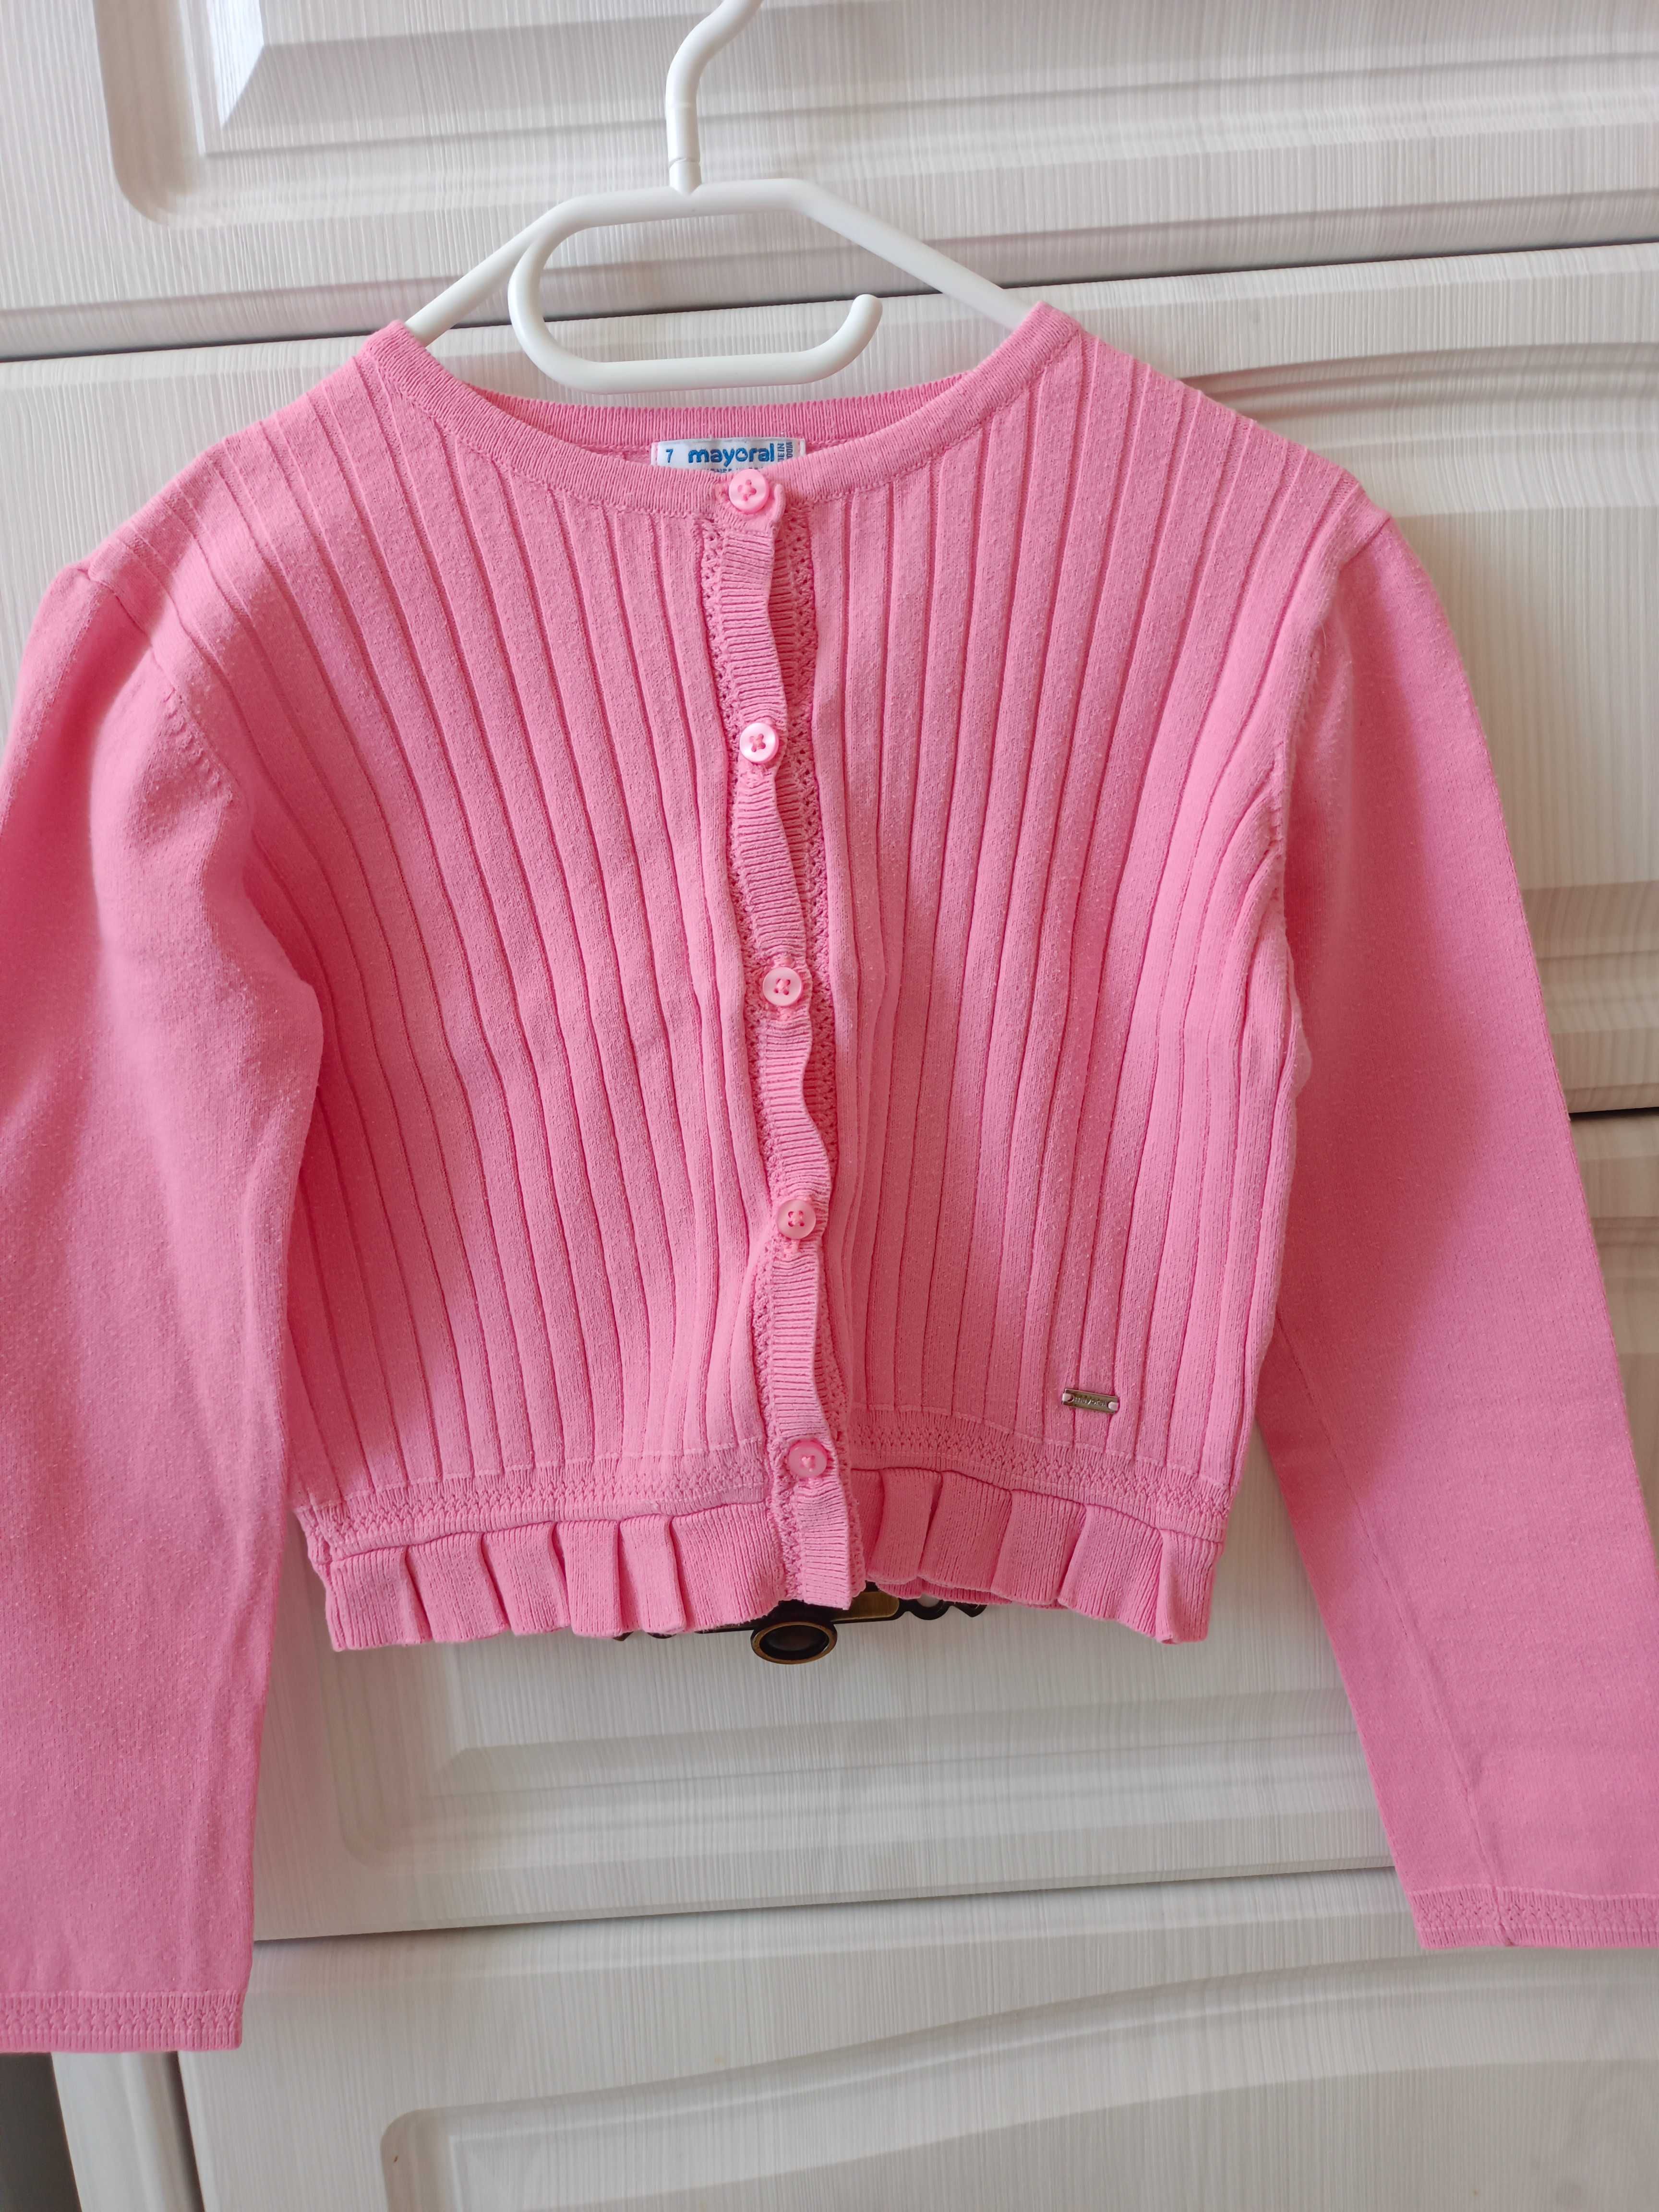 Sweterek dla dziewczynki Mayoral, rozmiar 122